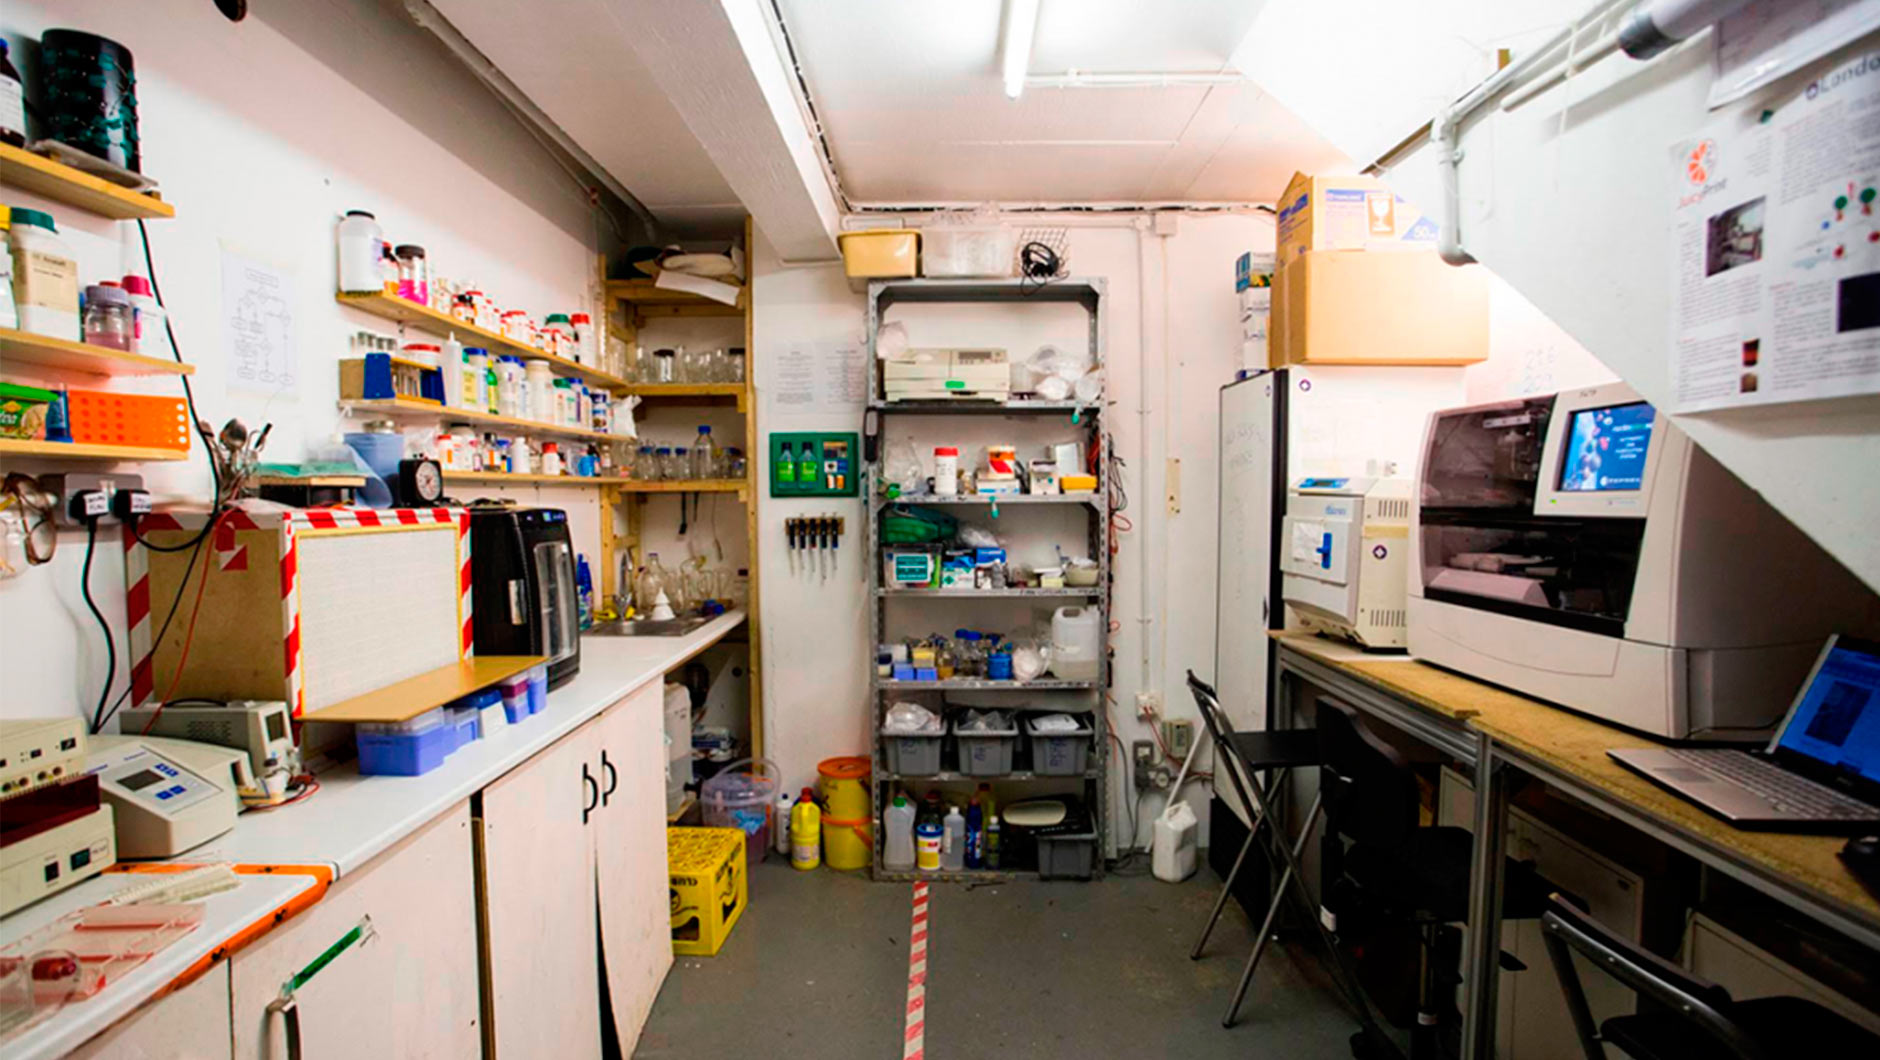 Над своими смелыми проектами независимые исследователи работают в домашних лабораториях